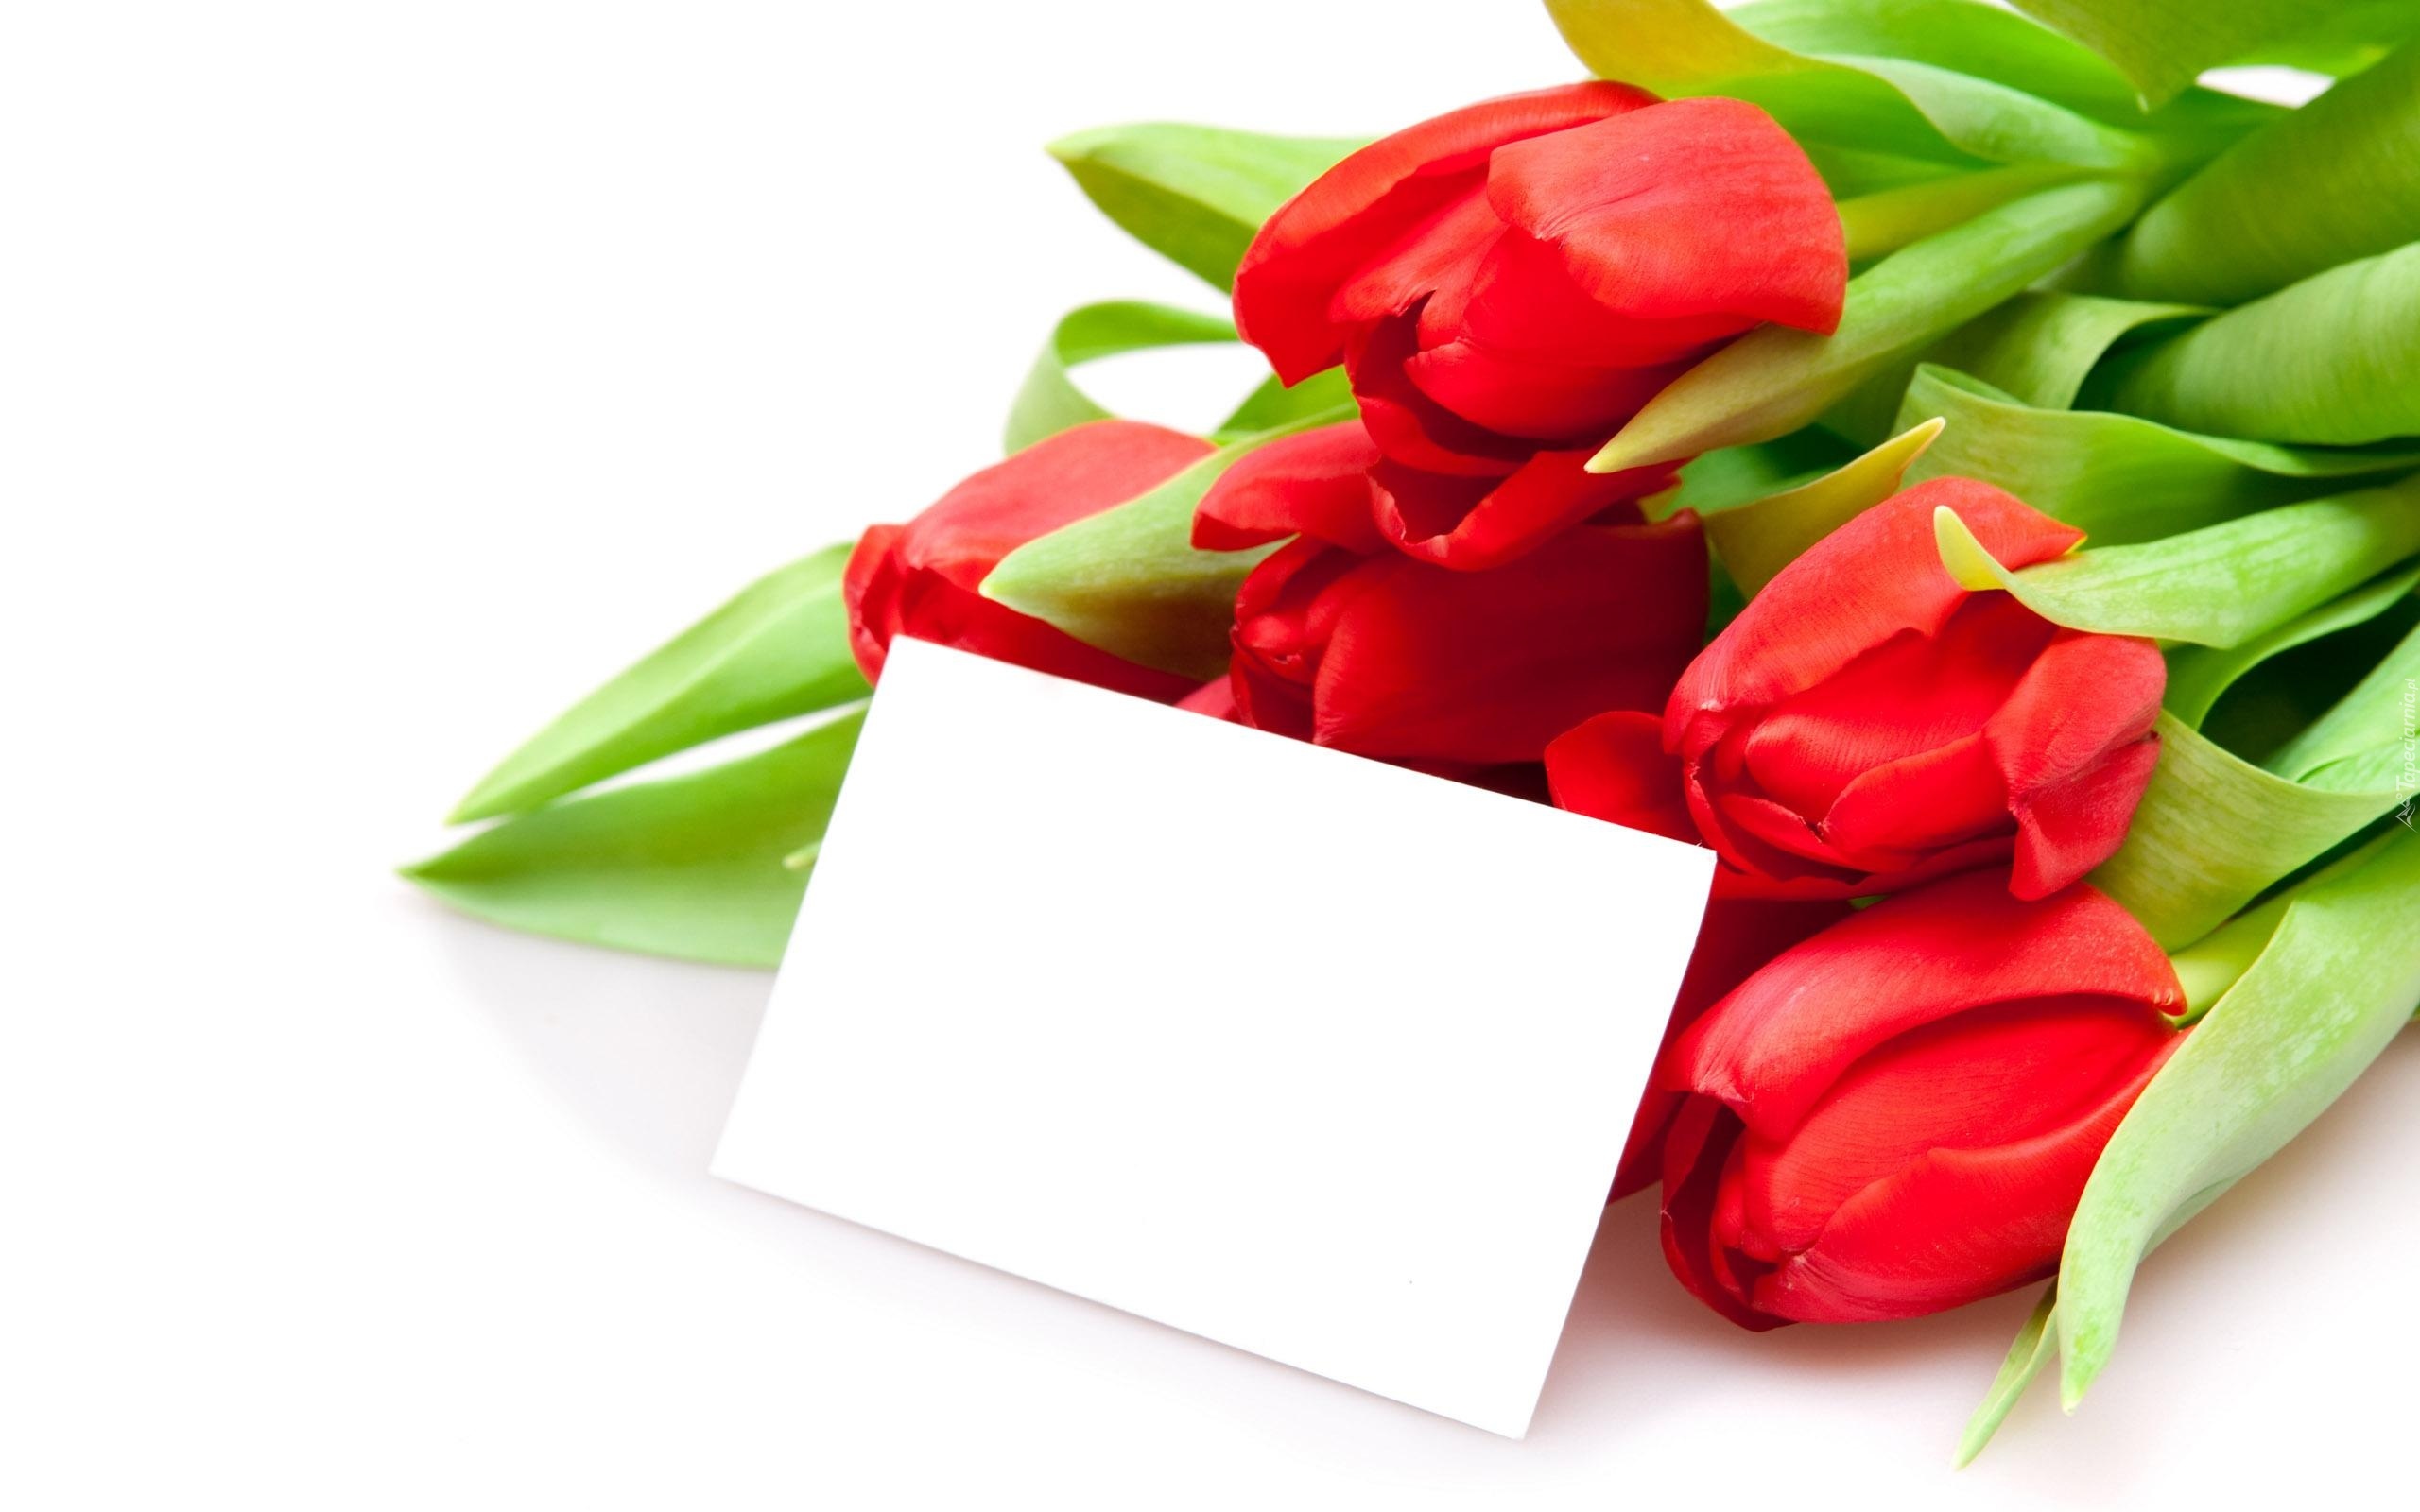 Czerwone, Tulipany, Walentynki, Liścik